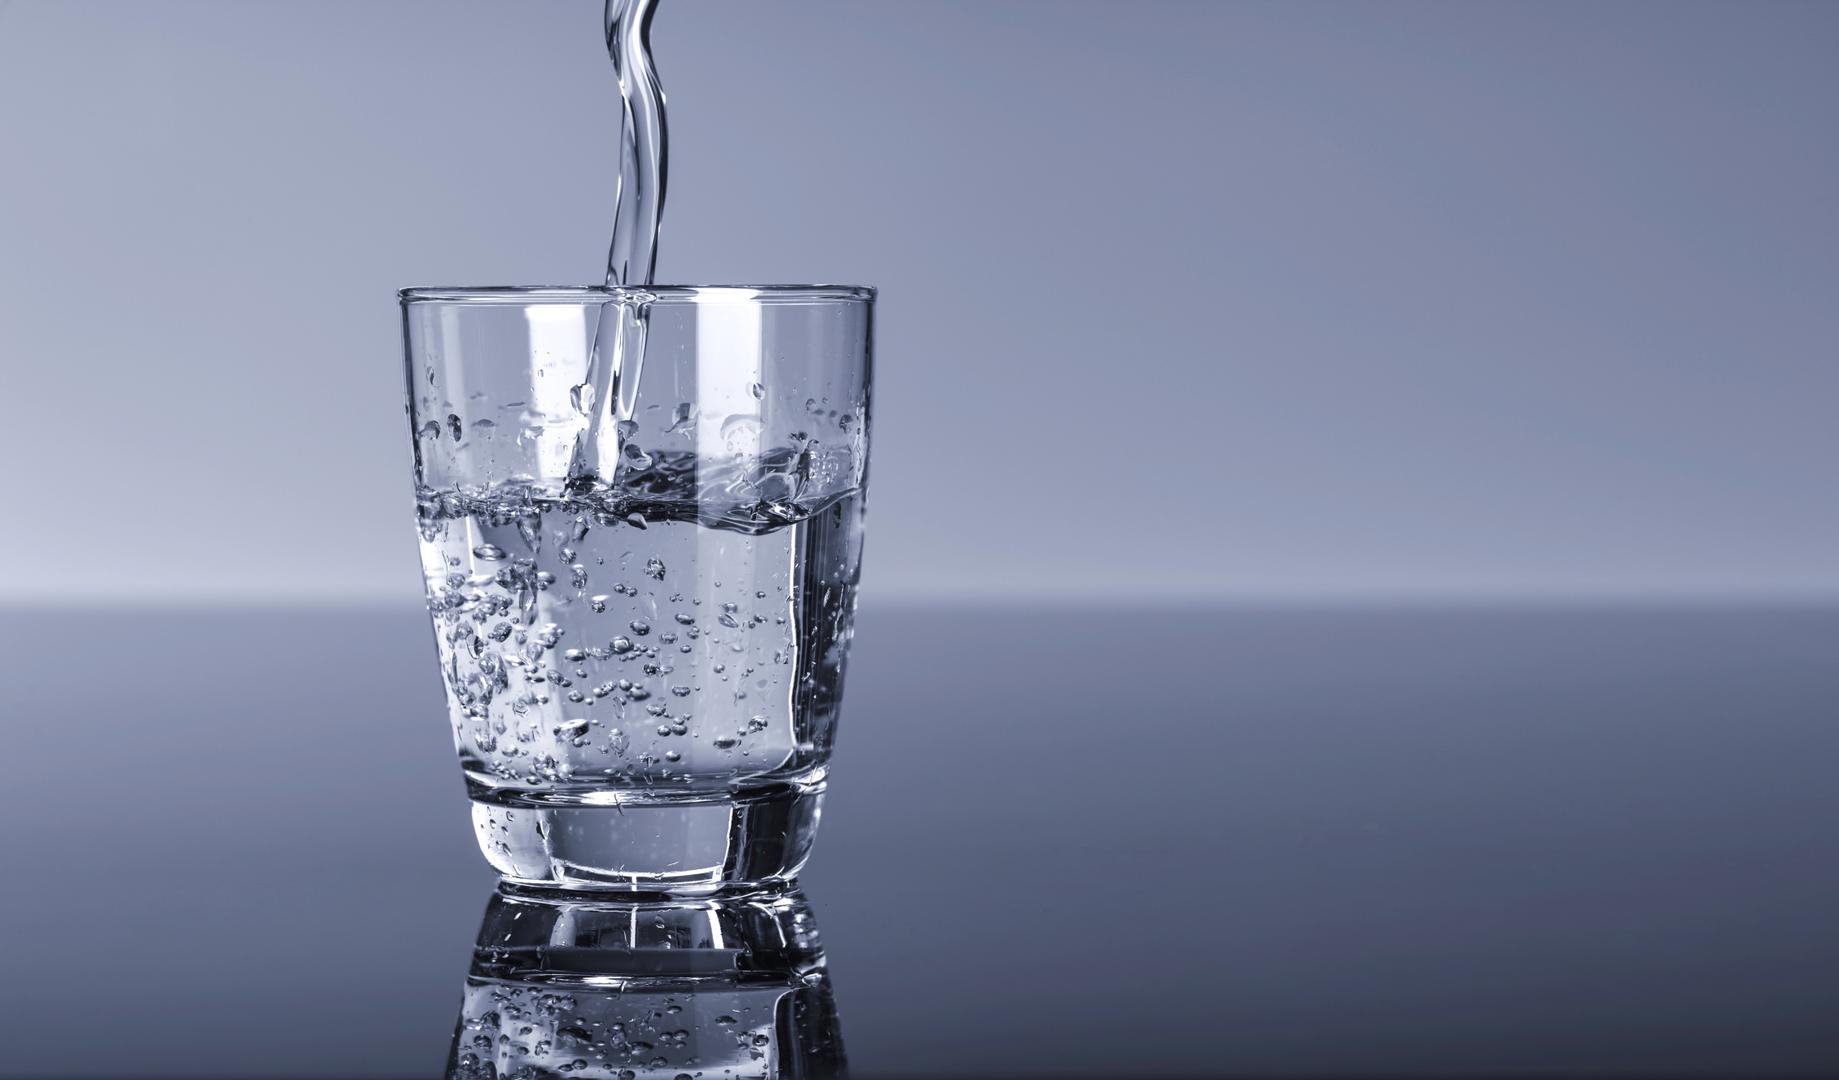 Prema istraživanju provedenom 2001. godine, ispijanje hladne vode može biti uzrok migrena, a kineska medicina smatra da će se poremititi cijeli probavni sustav ako ispijate hladnu vodu ili hladne napitke općenito uz topli obrok jer stvara neravnotežu u želucu. 